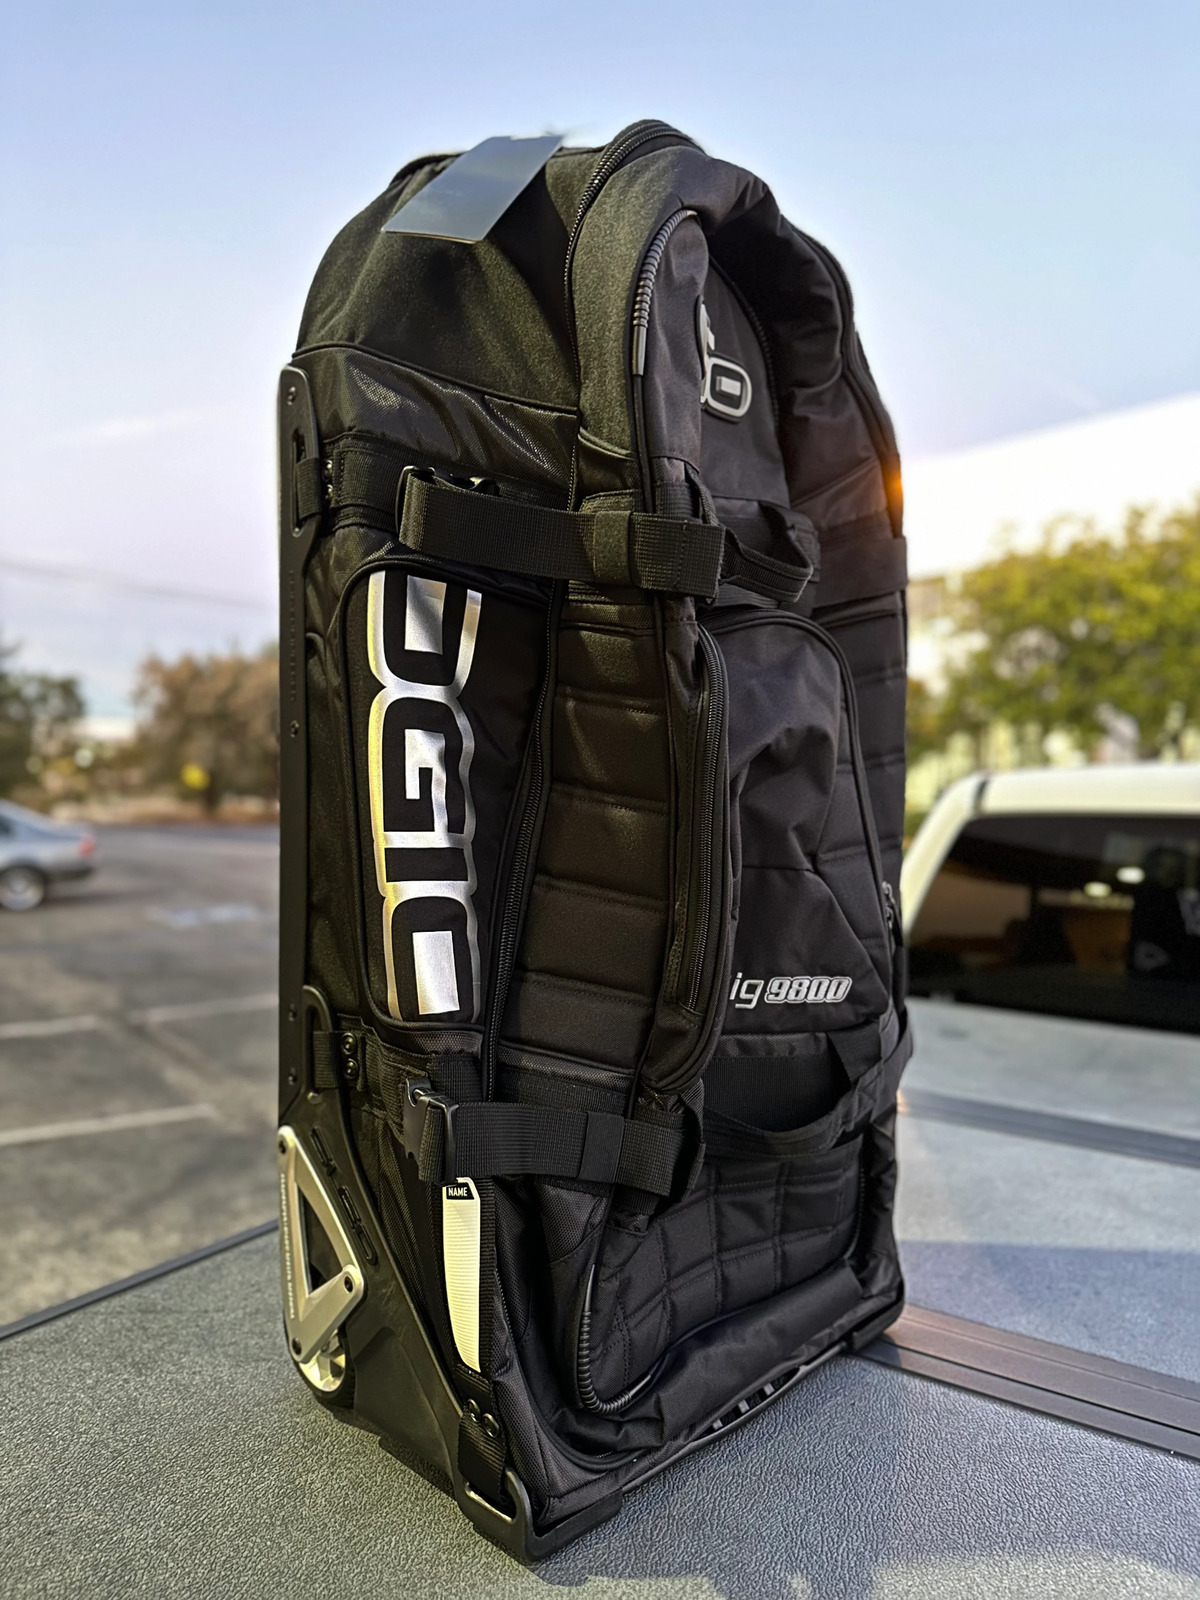 OGIO RIG 9800 Gear Bag - Stealth Black